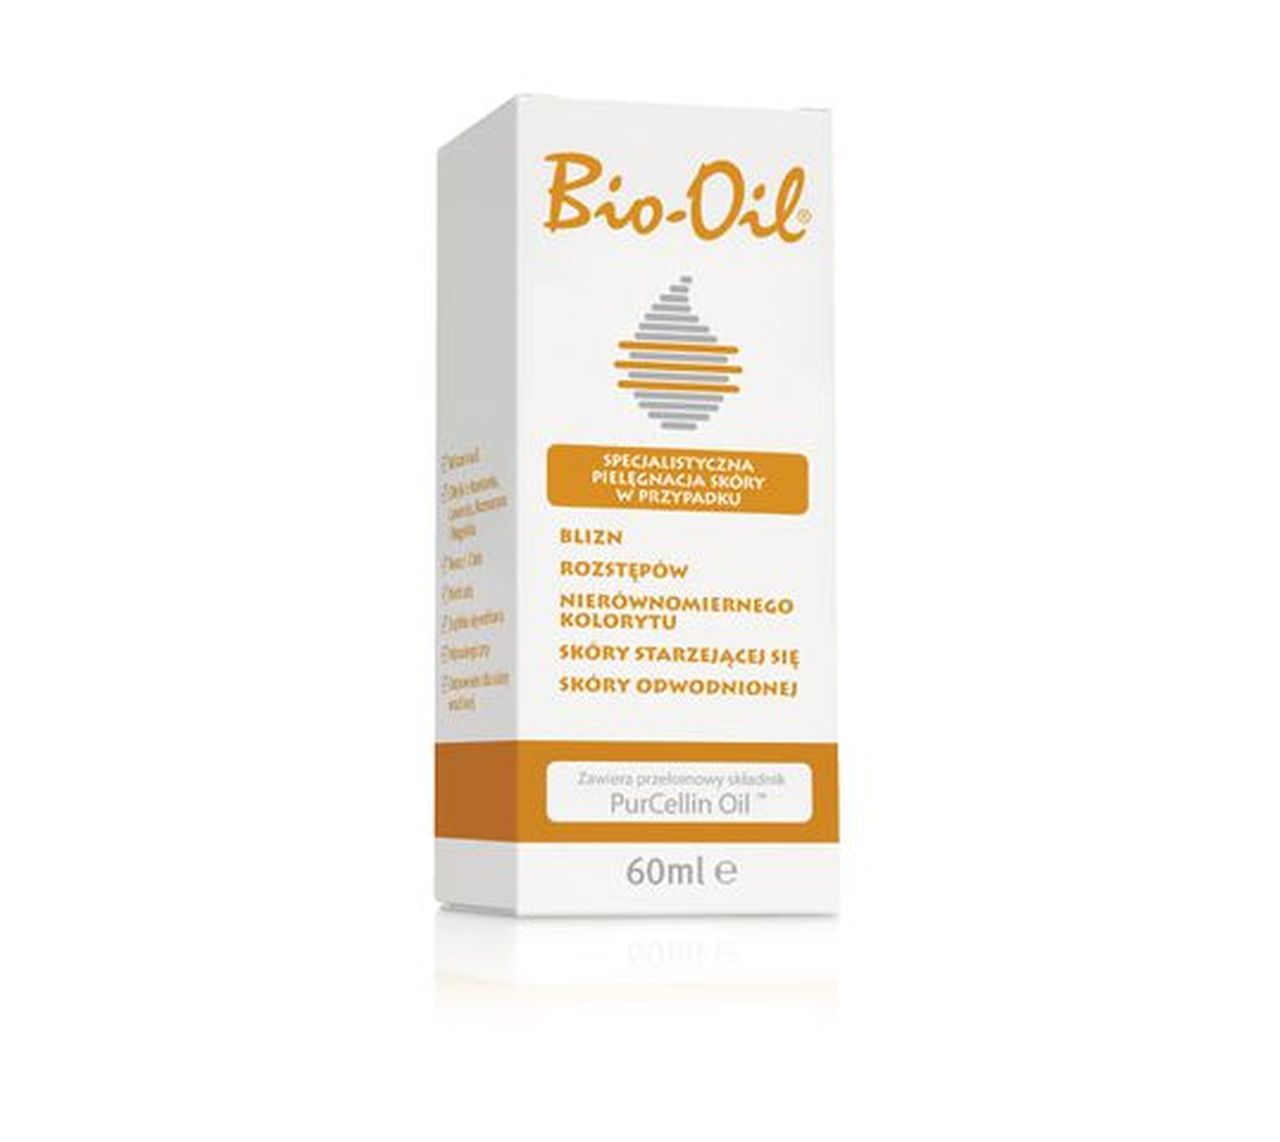 Bio-Oil olejek na blizny do skóry dojrzałej odwodnionej i wrażliwej (60 ml)